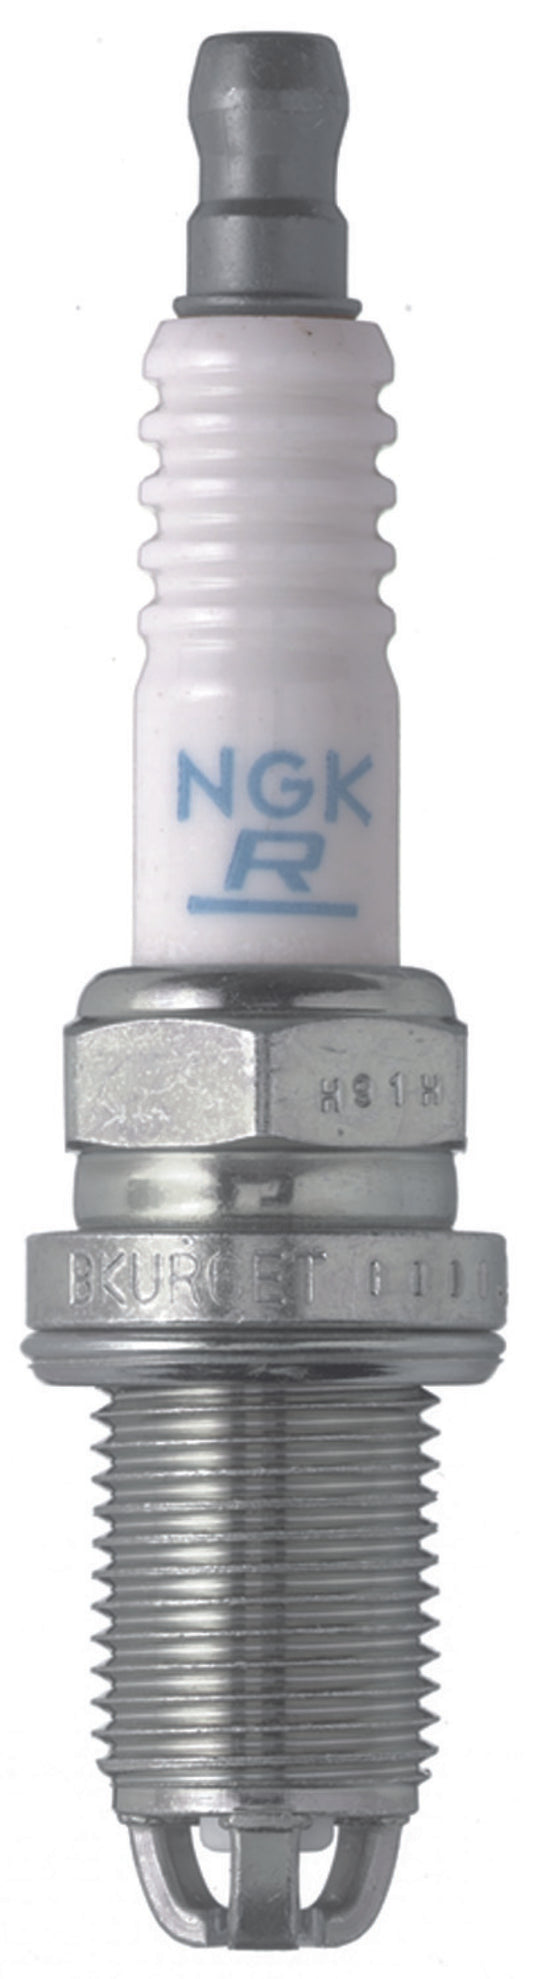 NGK Copper Core Spark Plug Box of 4 (BKUR6ET-10)